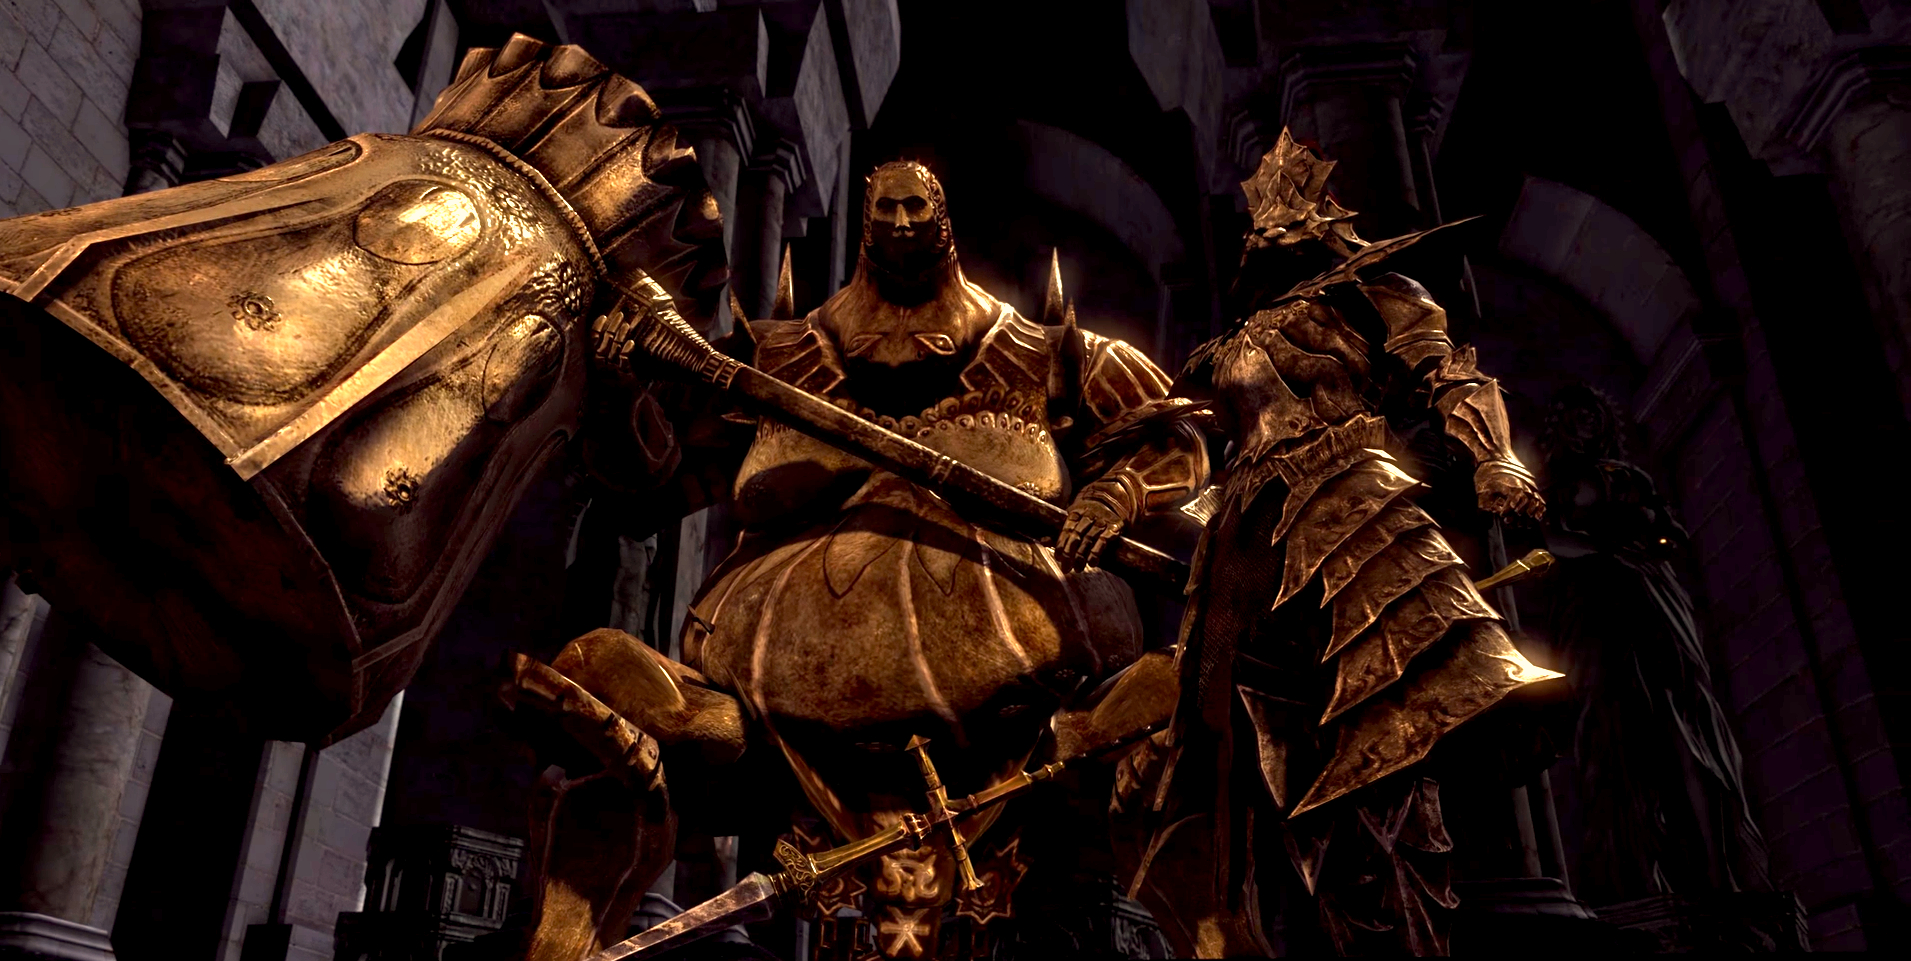 Dark Souls - Ornstein ve Smough patronları altın zırhları içinde ve patronlarının dövüşünden önceki ara sahnede silahlarını tutuyorlar.